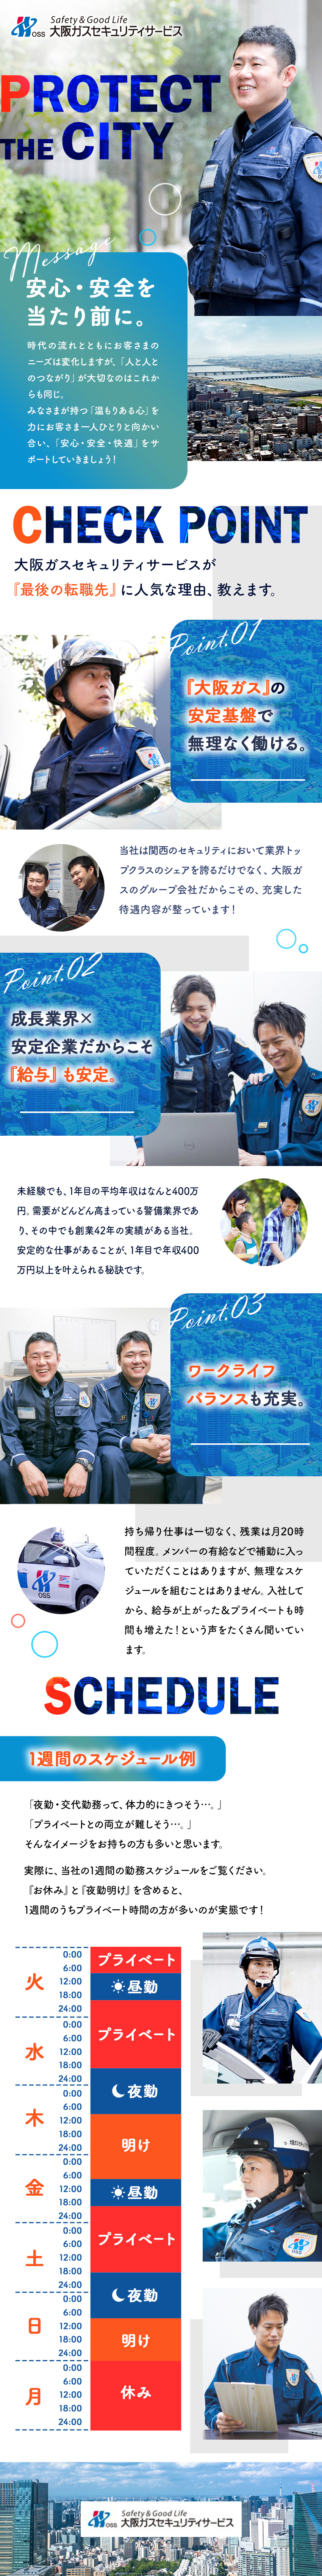 大阪ガスセキュリティサービス株式会社(大阪ガスのグループ会社) 街と人の安全を守るカスタマーサポート／業界屈指の安定基盤